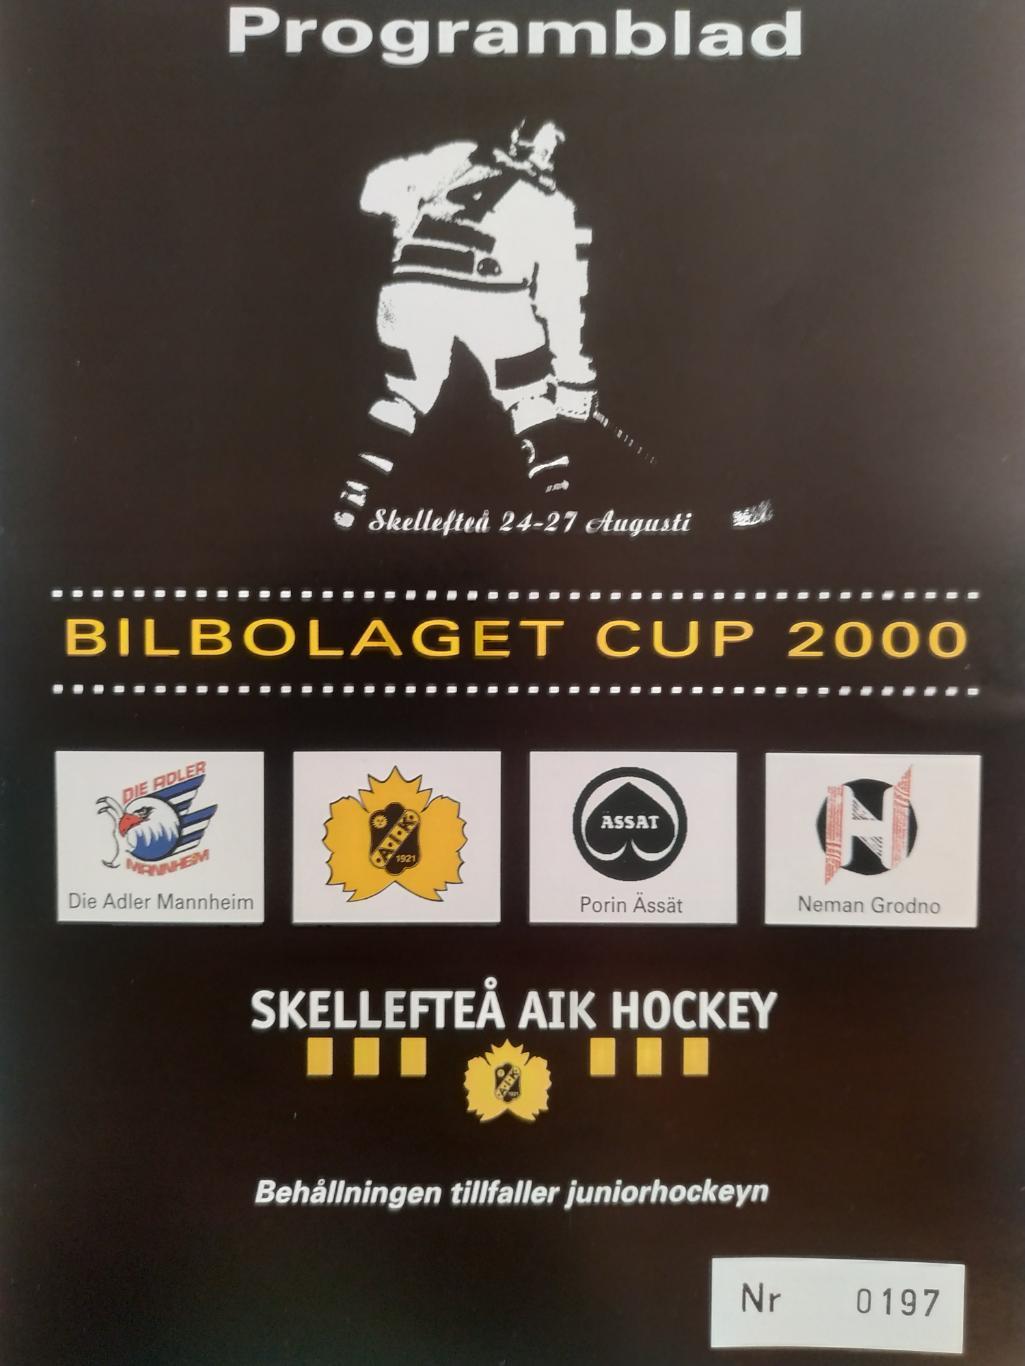 ХОККЕЙ ПРОГРАММА КУБКА НХЛ NHL 2000 BILBOLAGET CUP PROGRAM GAME